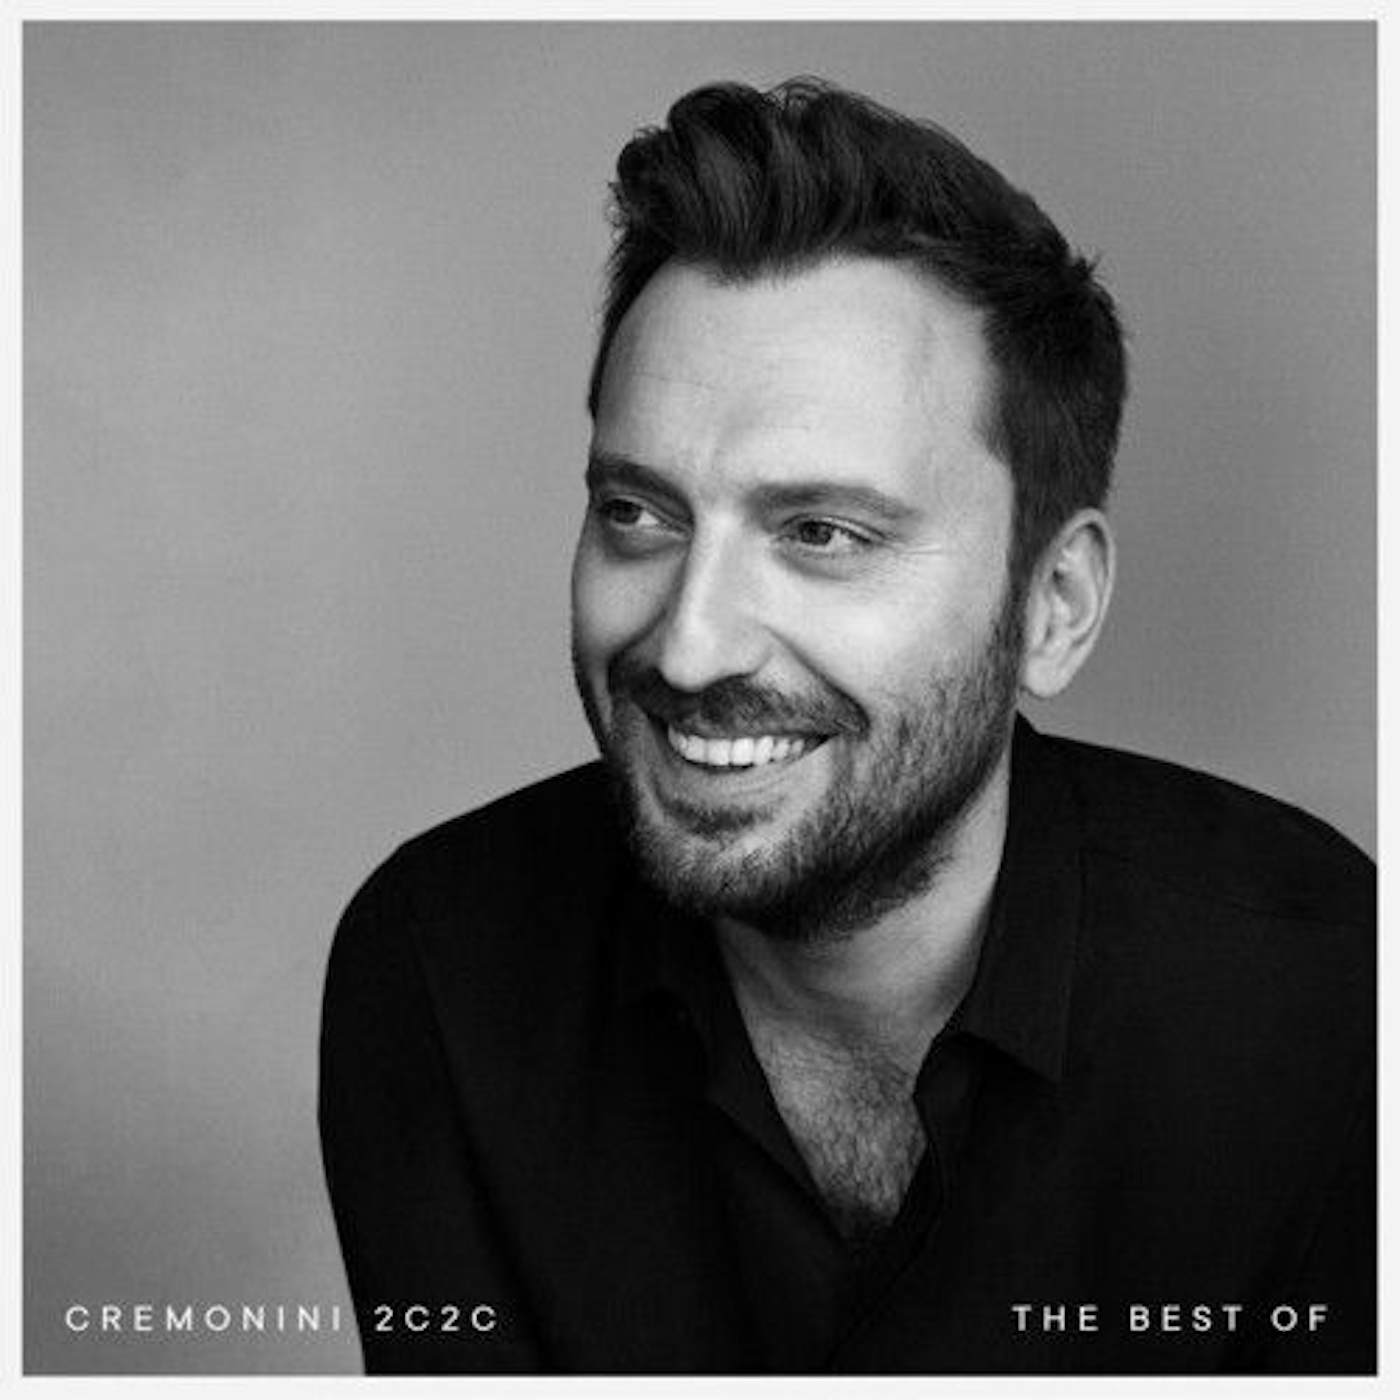 Cesare Cremonini Cremonini 2C2C The Best Of Vinyl Record